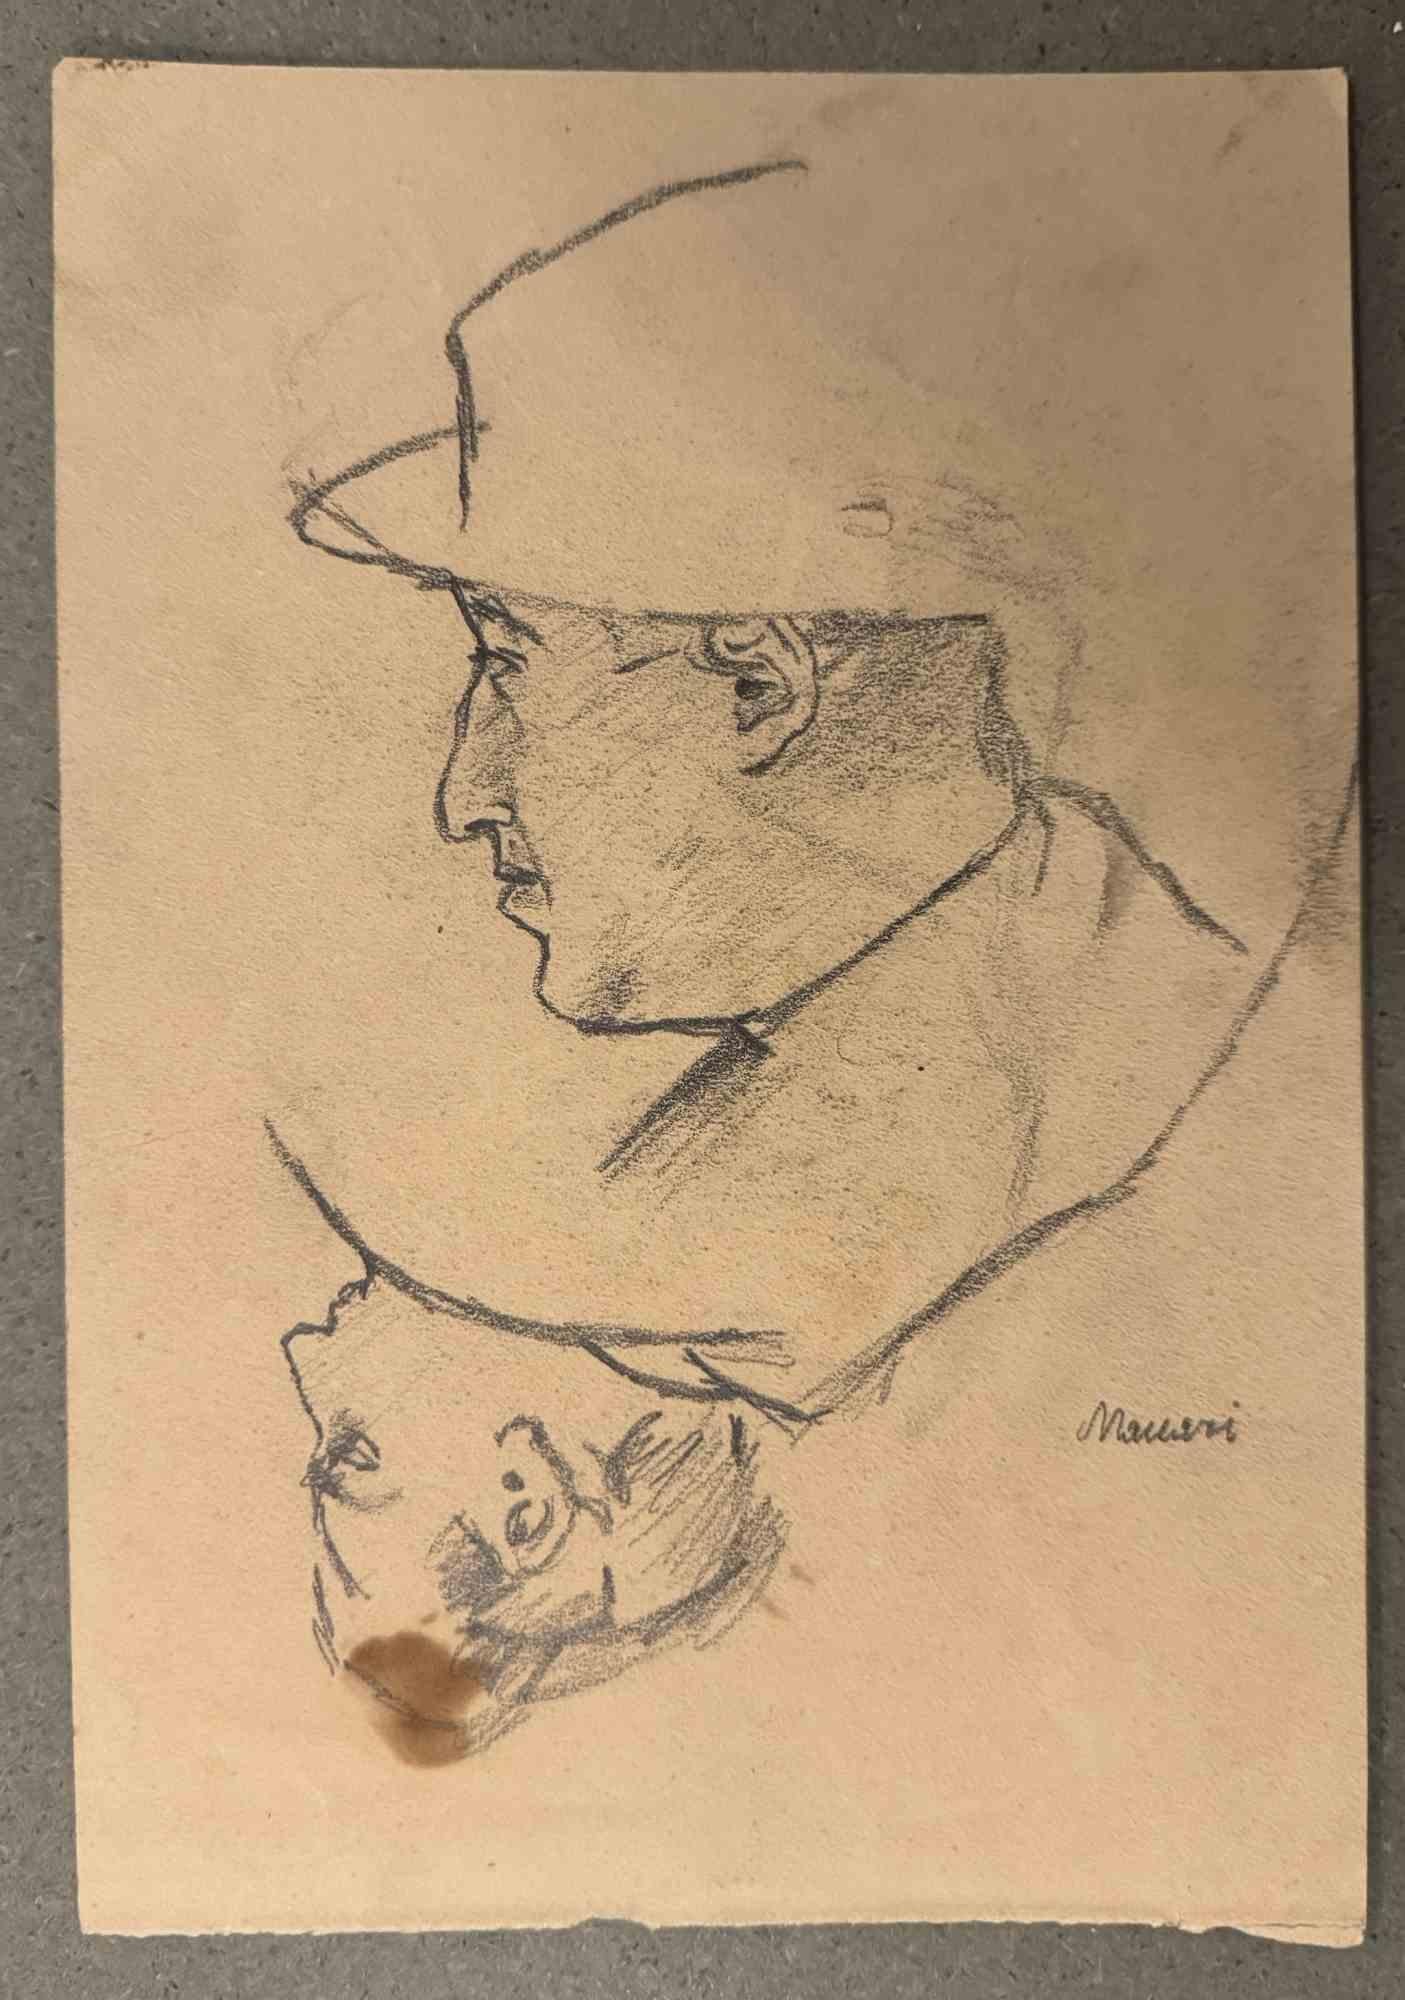 Portraits est un dessin au fusain réalisé par Mino Maccari (1924-1989) au milieu du 20e siècle.

Signé à la main.

Bon état avec de légères rousseurs.

Mino Maccari (Sienne, 1924-Rome, 16 juin 1989) est un écrivain, peintre, graveur et journaliste